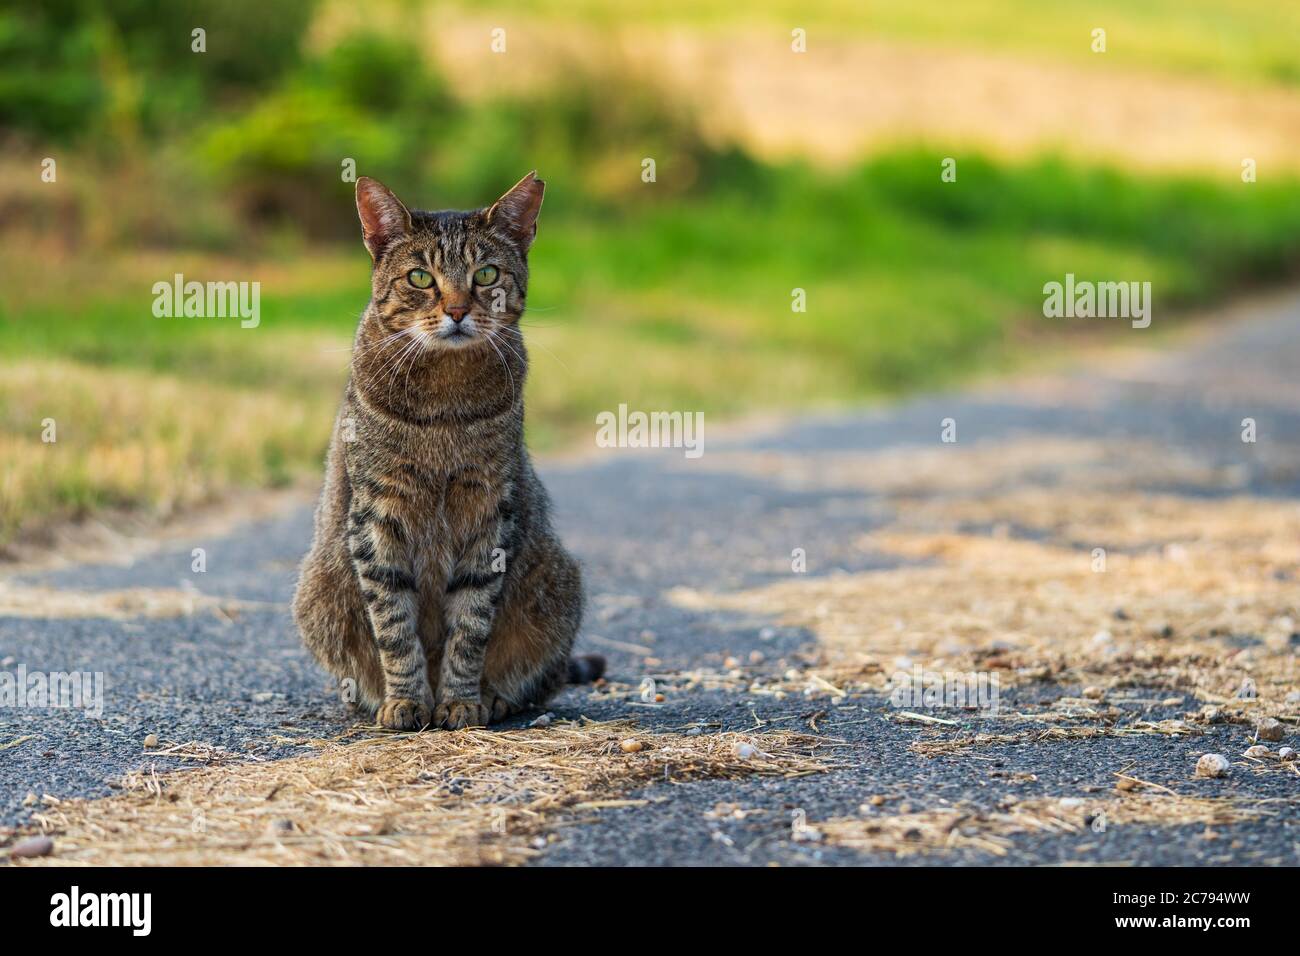 Porträt einer niedlichen streunenden Katze (European Shorthair) mit leuchtend grünen Augen und einem gebissenen Ohr, das auf einer ländlichen Straße sitzt und neugierig auf die Kamera schaut Stockfoto